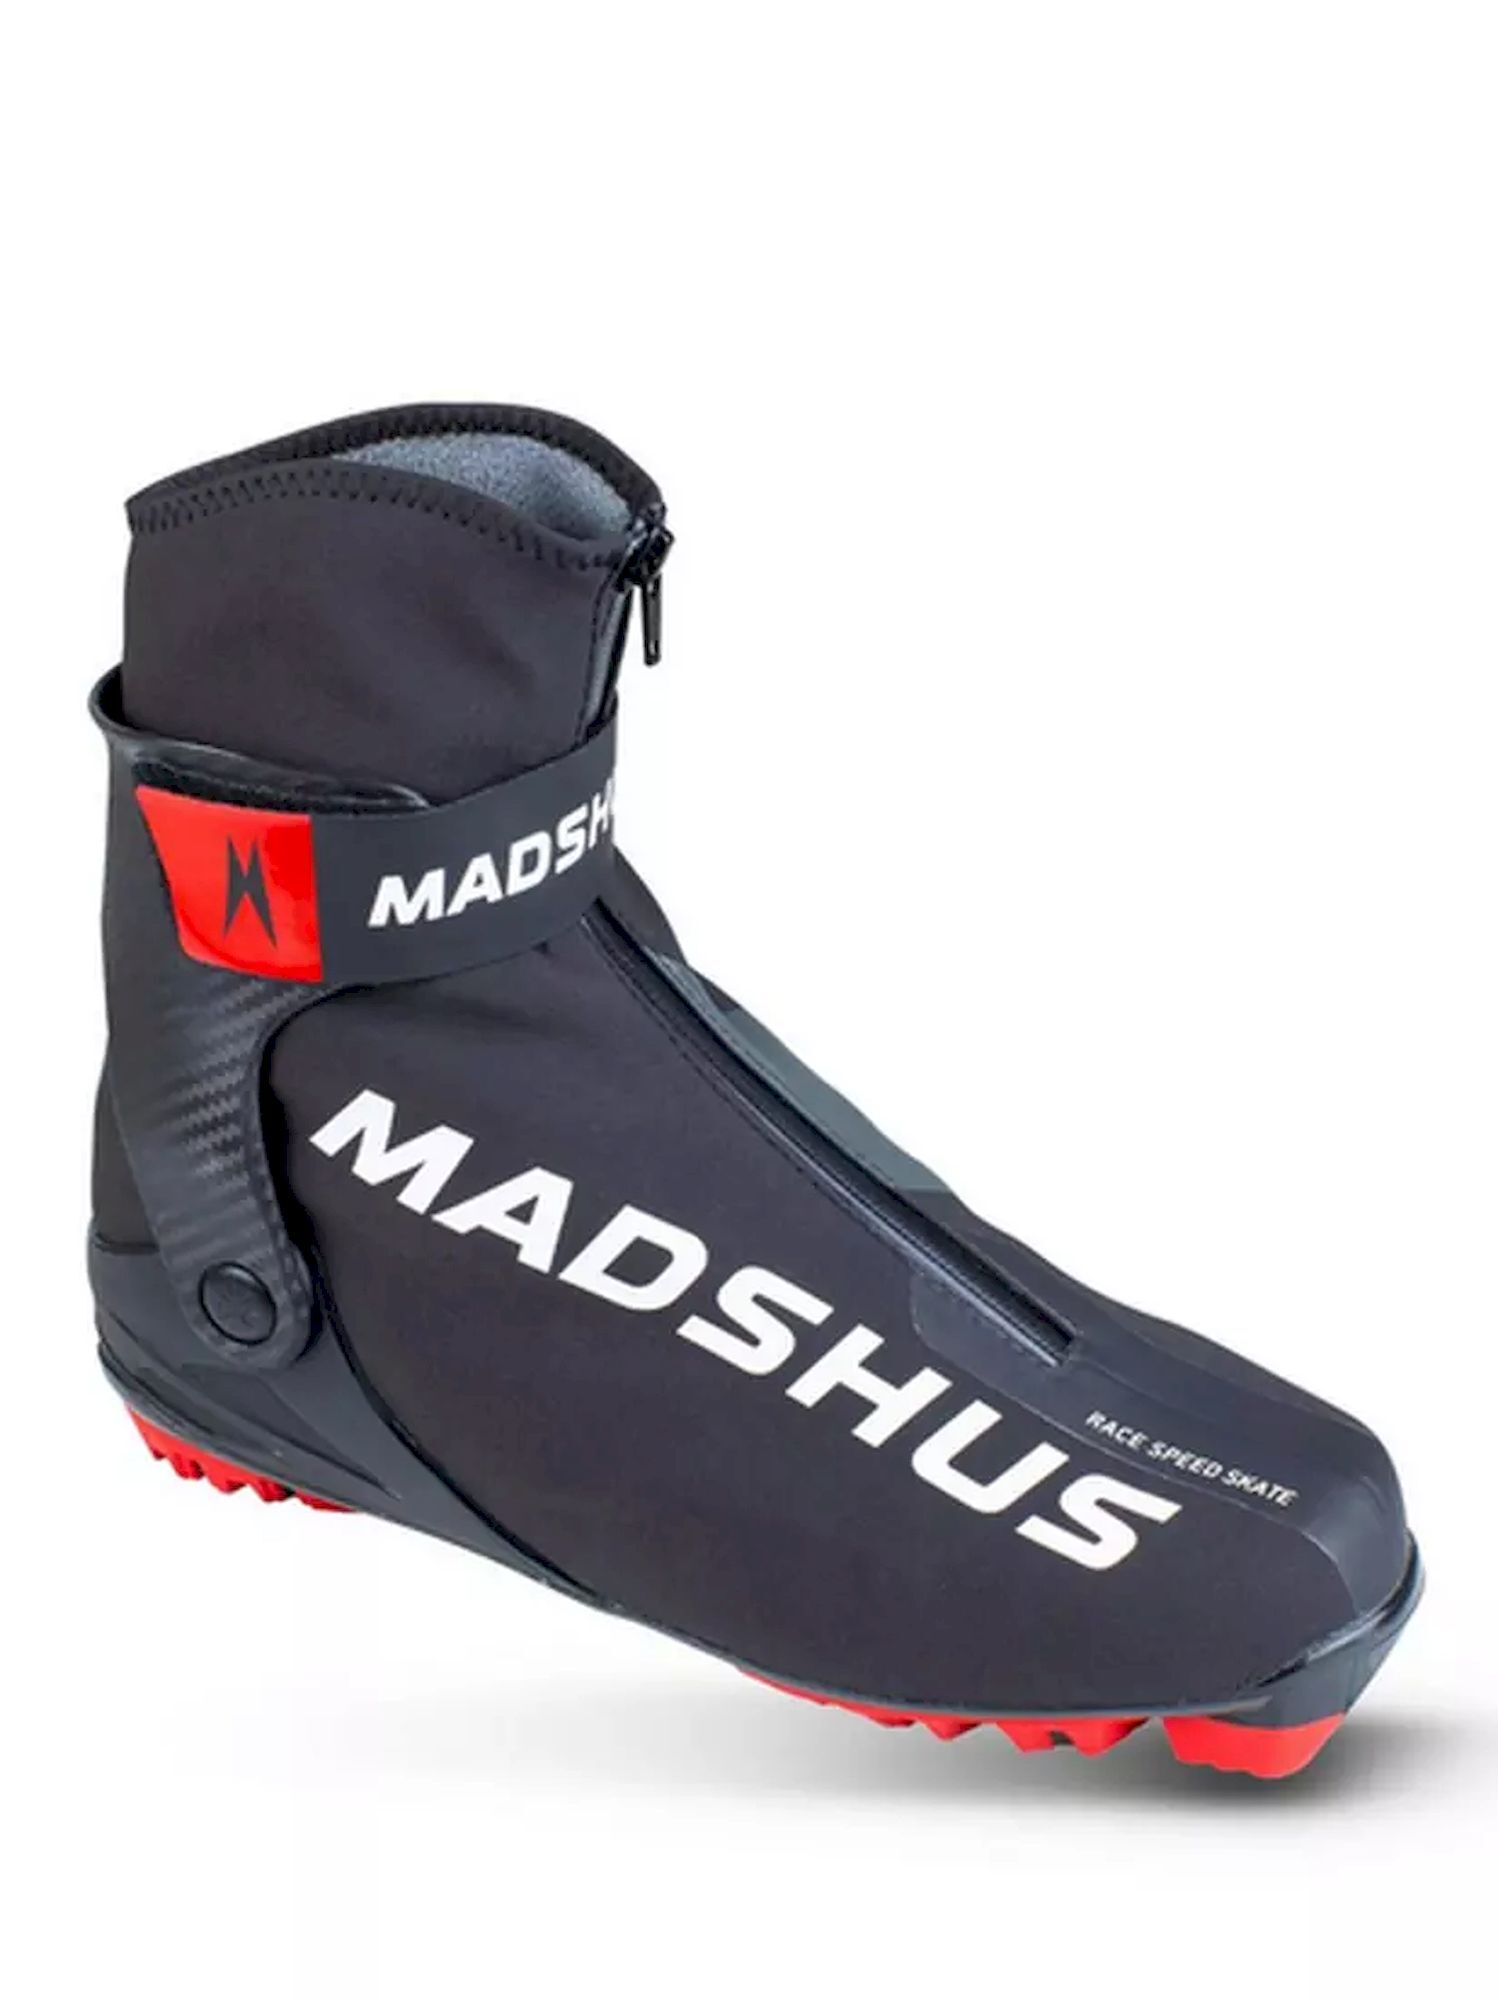 Madshus Race Speed Skate - Langlaufschoenen | Hardloop